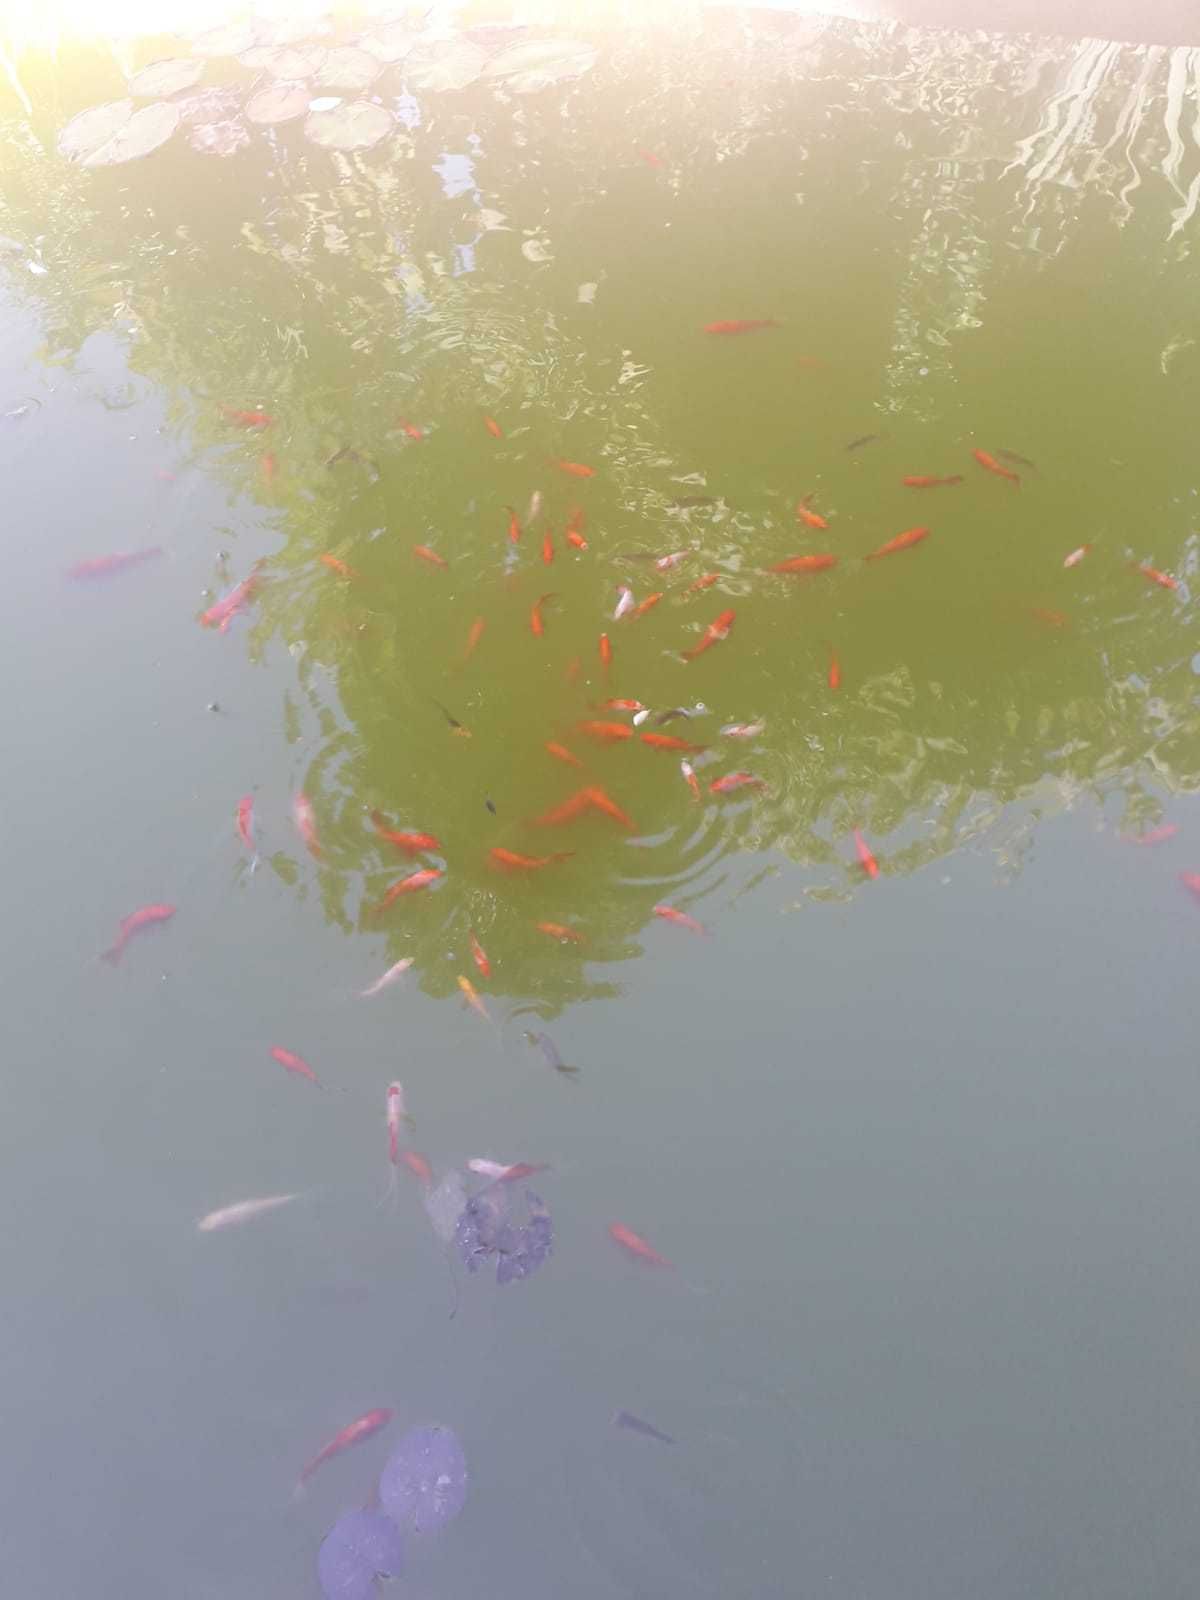 Peixes vermelho de aquario, cometa